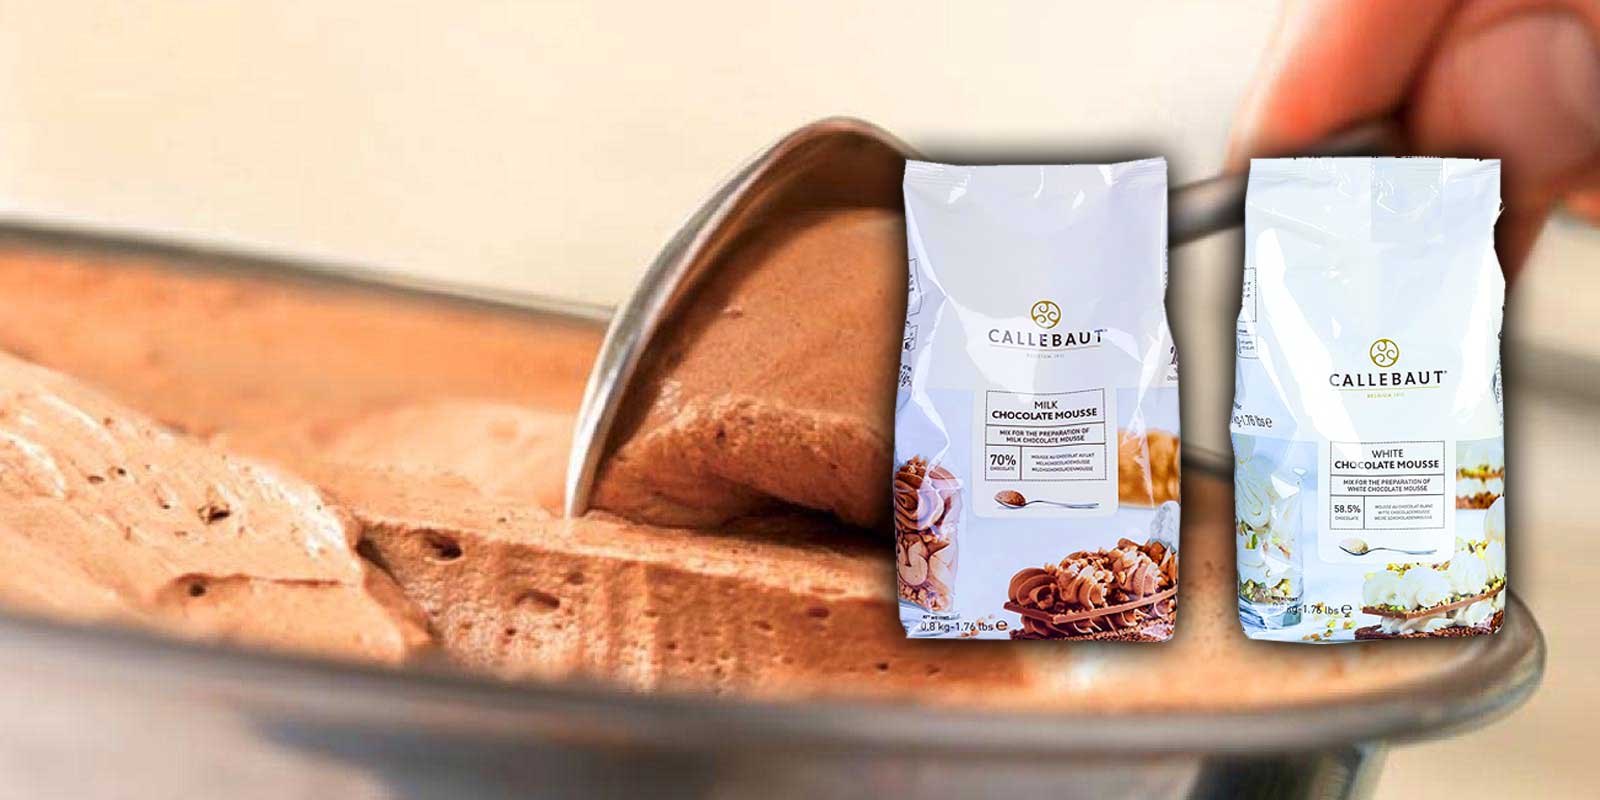 Mousse pulver og sproett fra Callebaut Callebaut oensker a gi hver konditor god sjokolade og stoette deg i det du elsker mest - a lage fantastiske sjokoladefryd for dine kunder og venner, det er Callebauts mal. Det hele startet i 1911 i en liten belgisk by kalt Wieze.